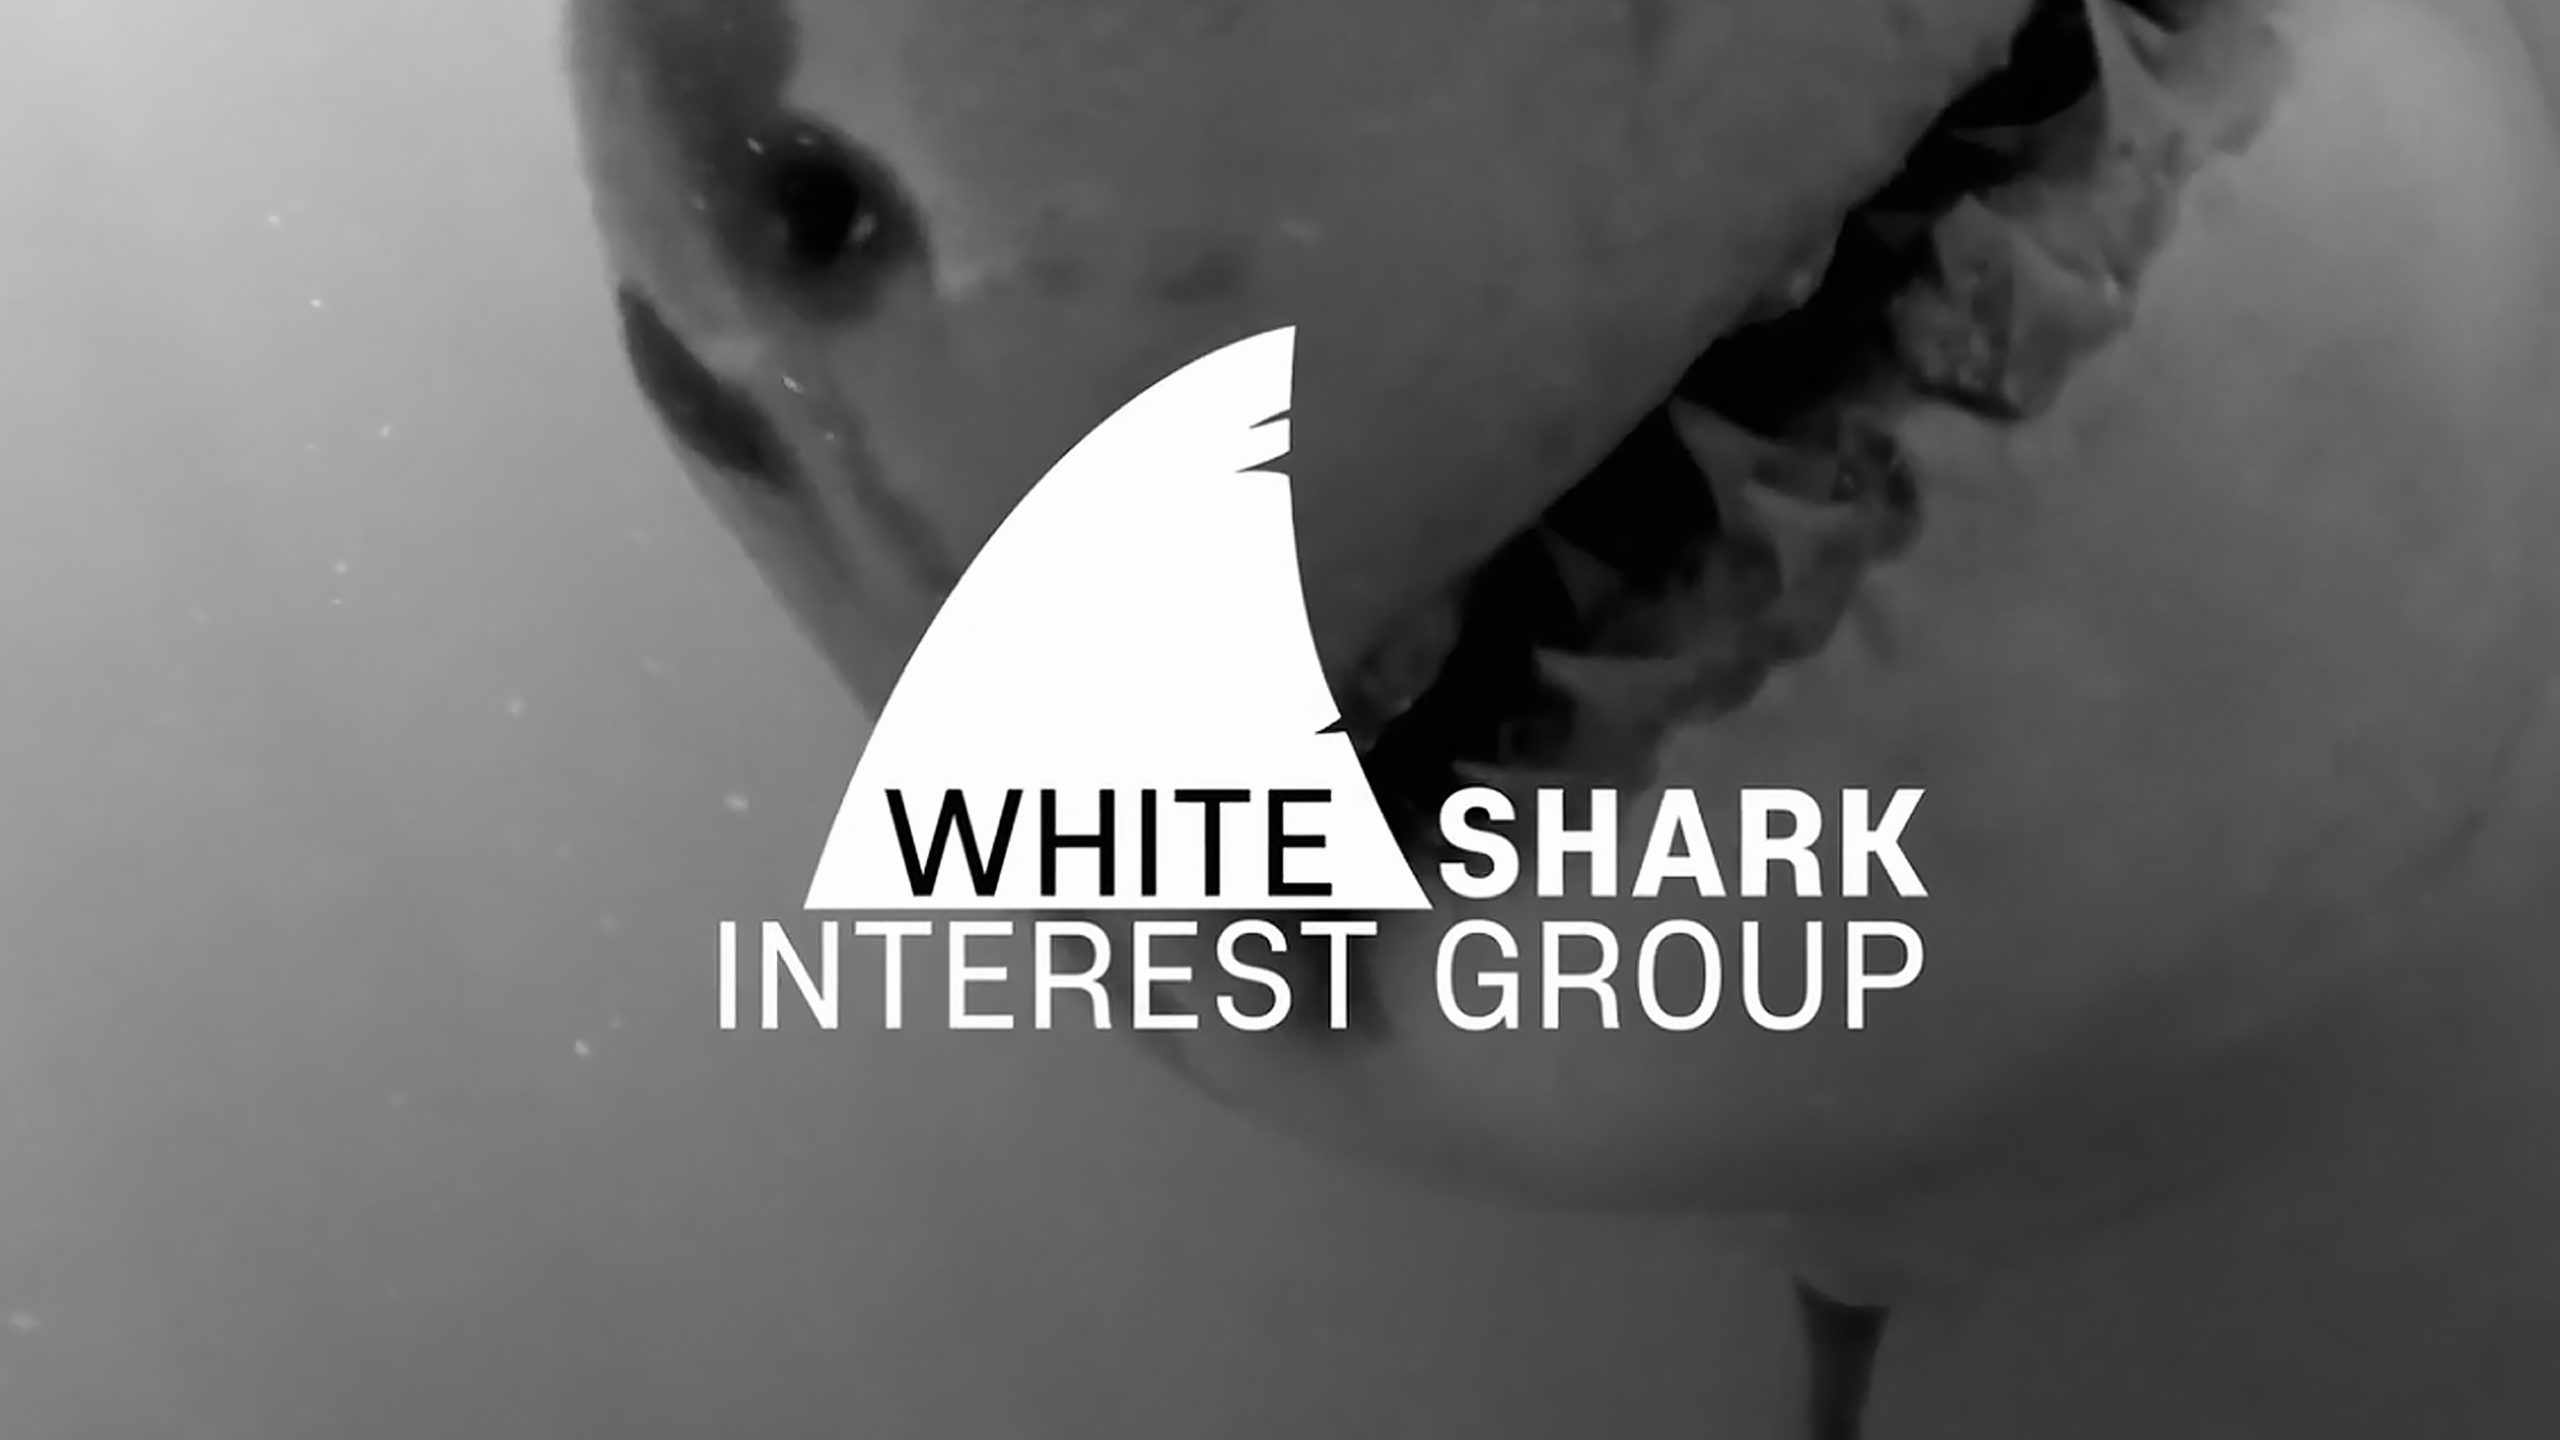 White Shark Interest Group 4K promo